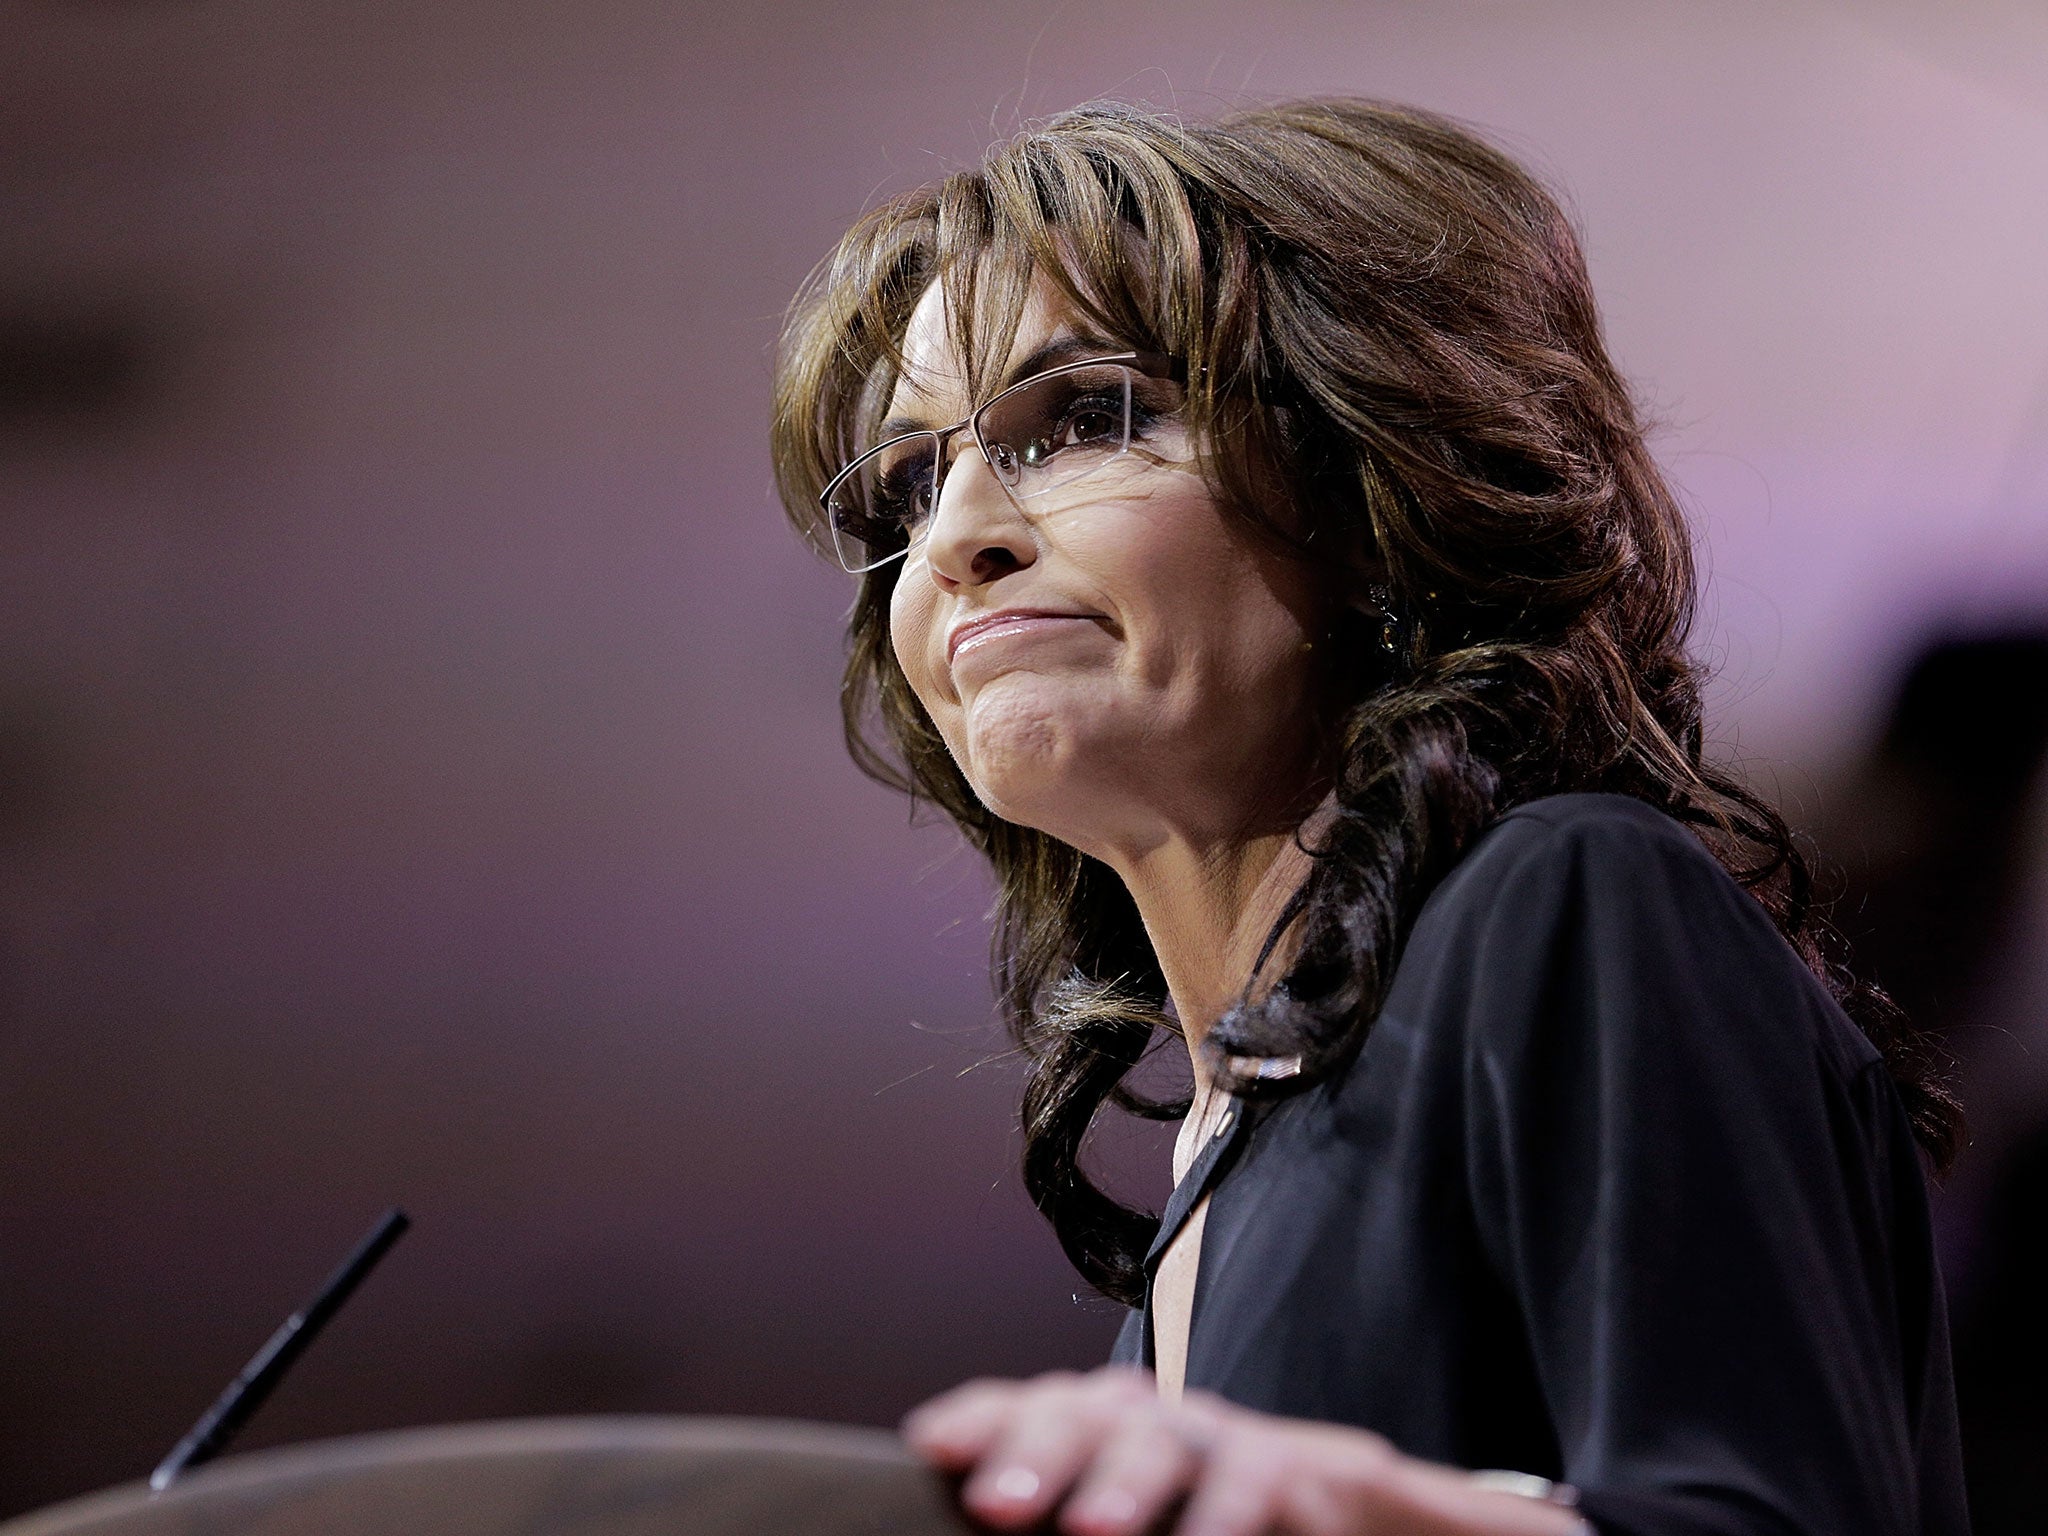 Sarah Palin attacked Lena Dunham on social media, while defending the Duggar family